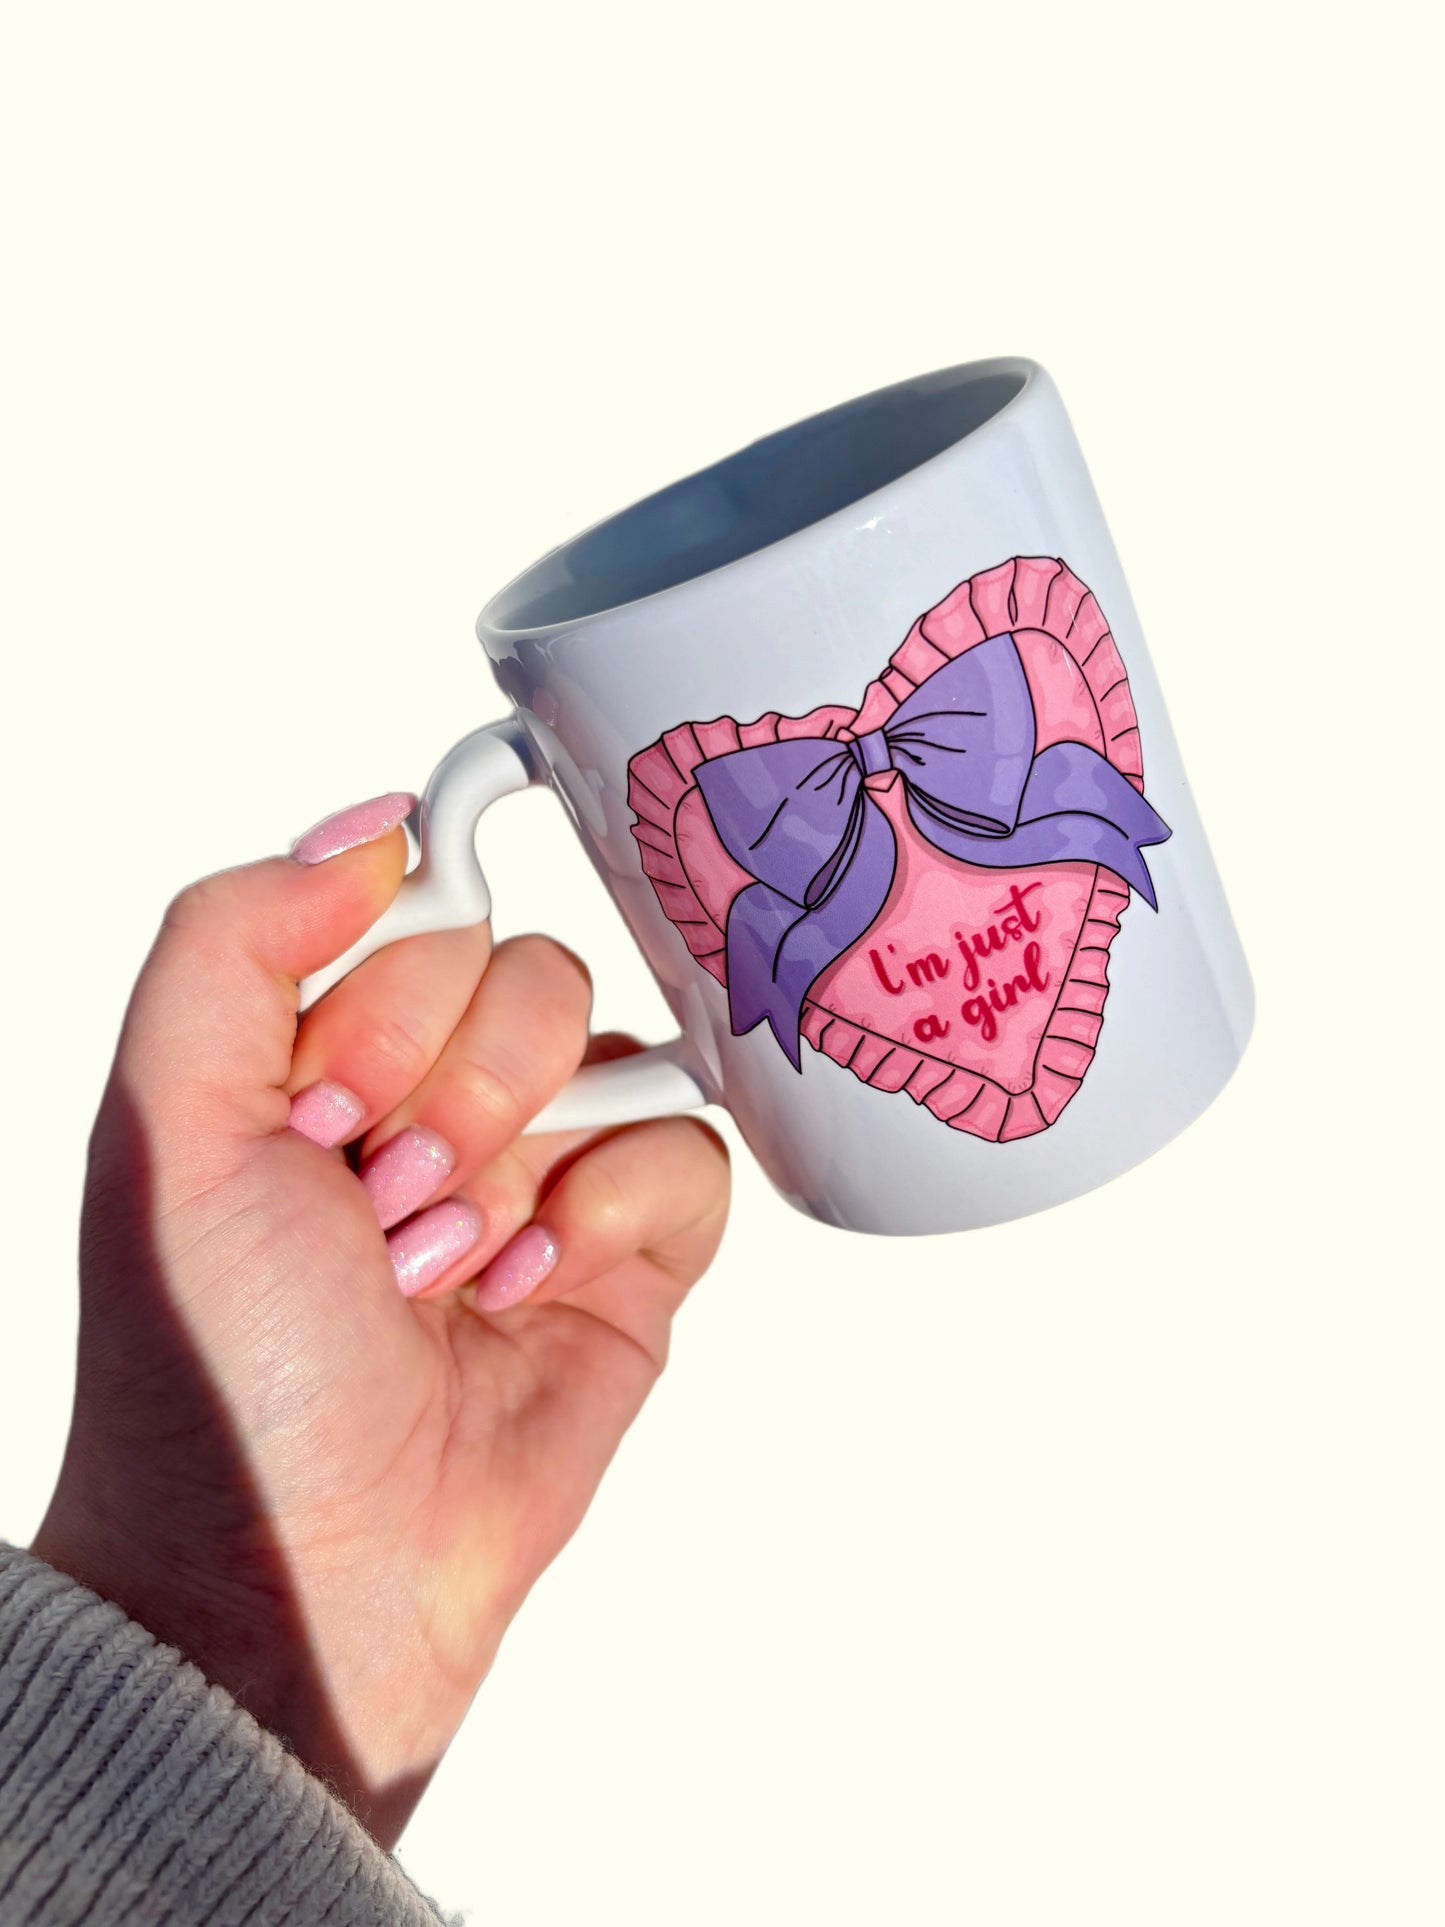 I'm Just a Girl Ceramic Mug